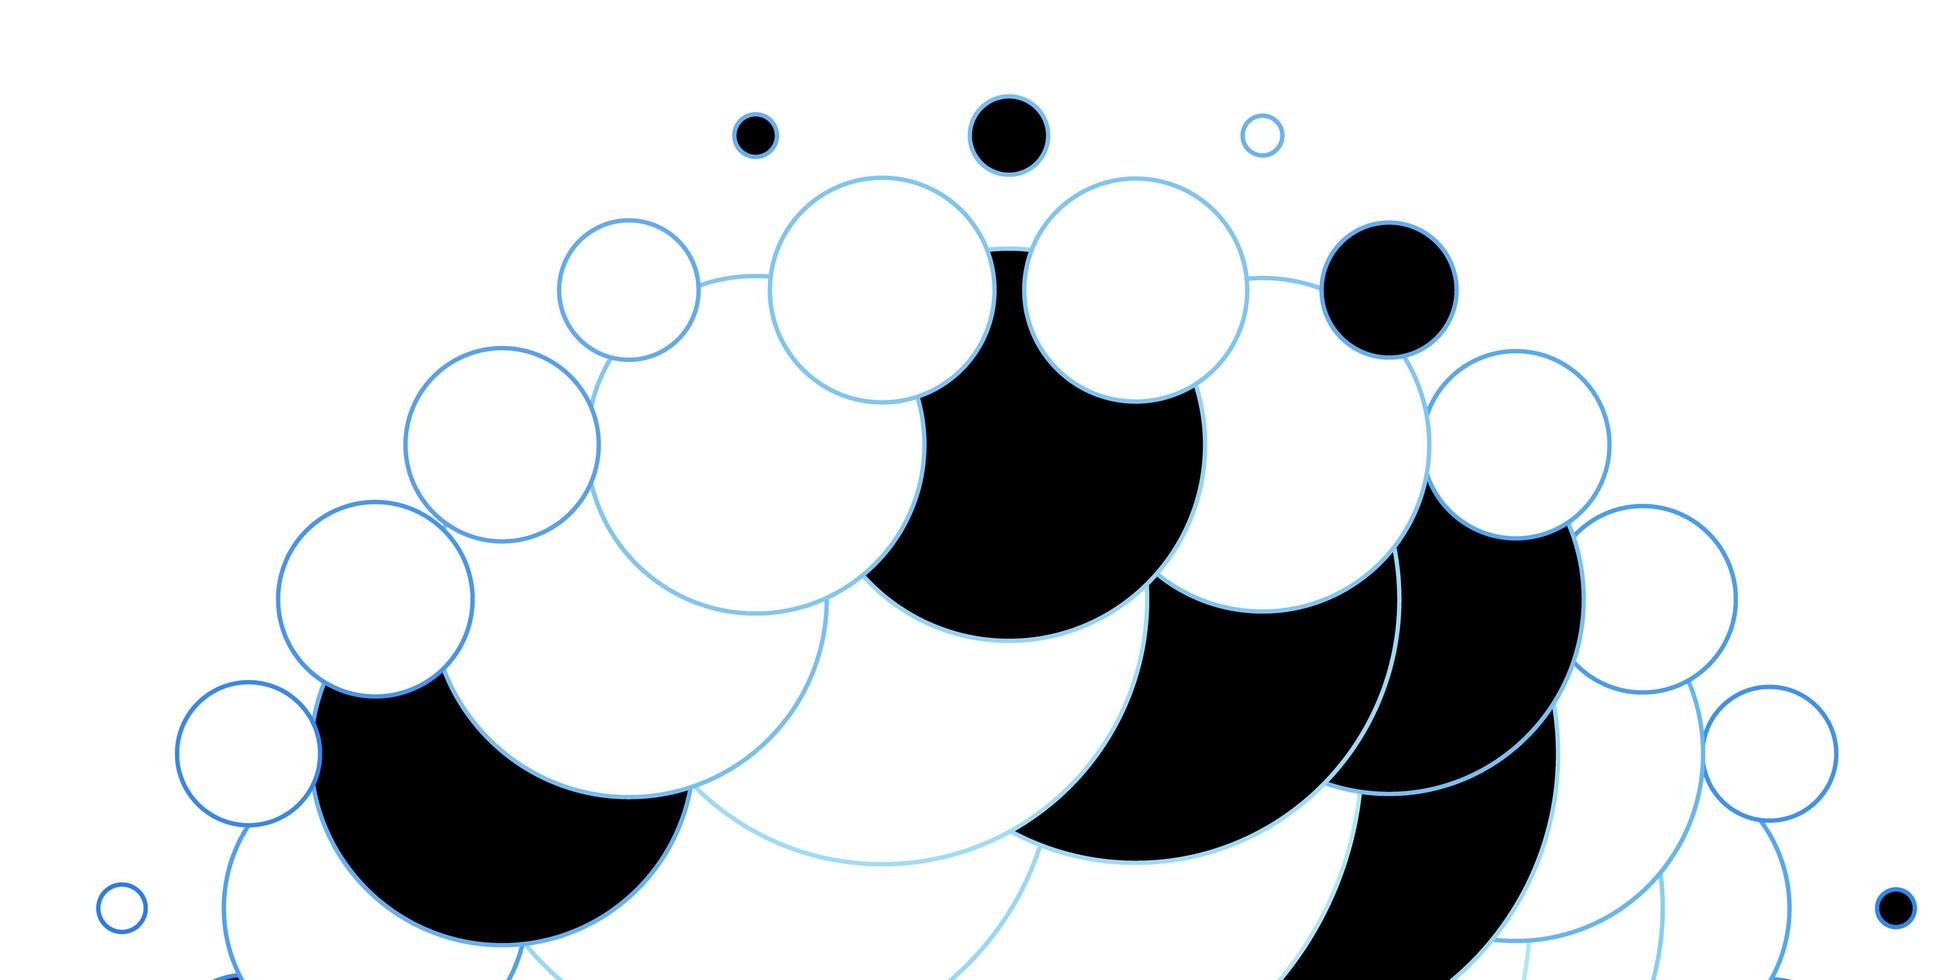 fundo vector azul escuro com círculos.